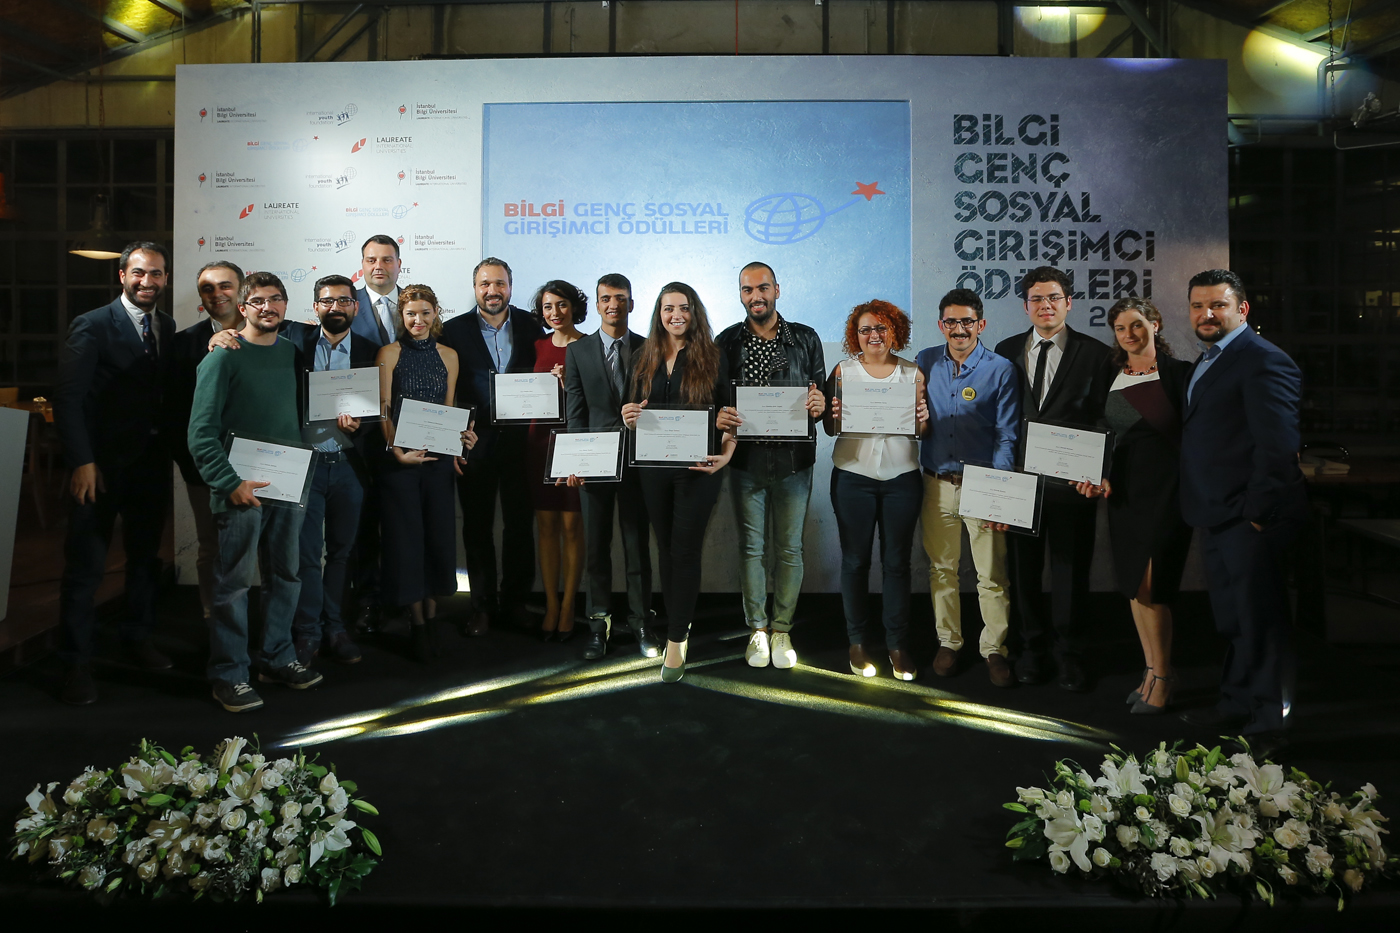 BİLGİ Genç Sosyal Girişimci Ödül Töreni 2015